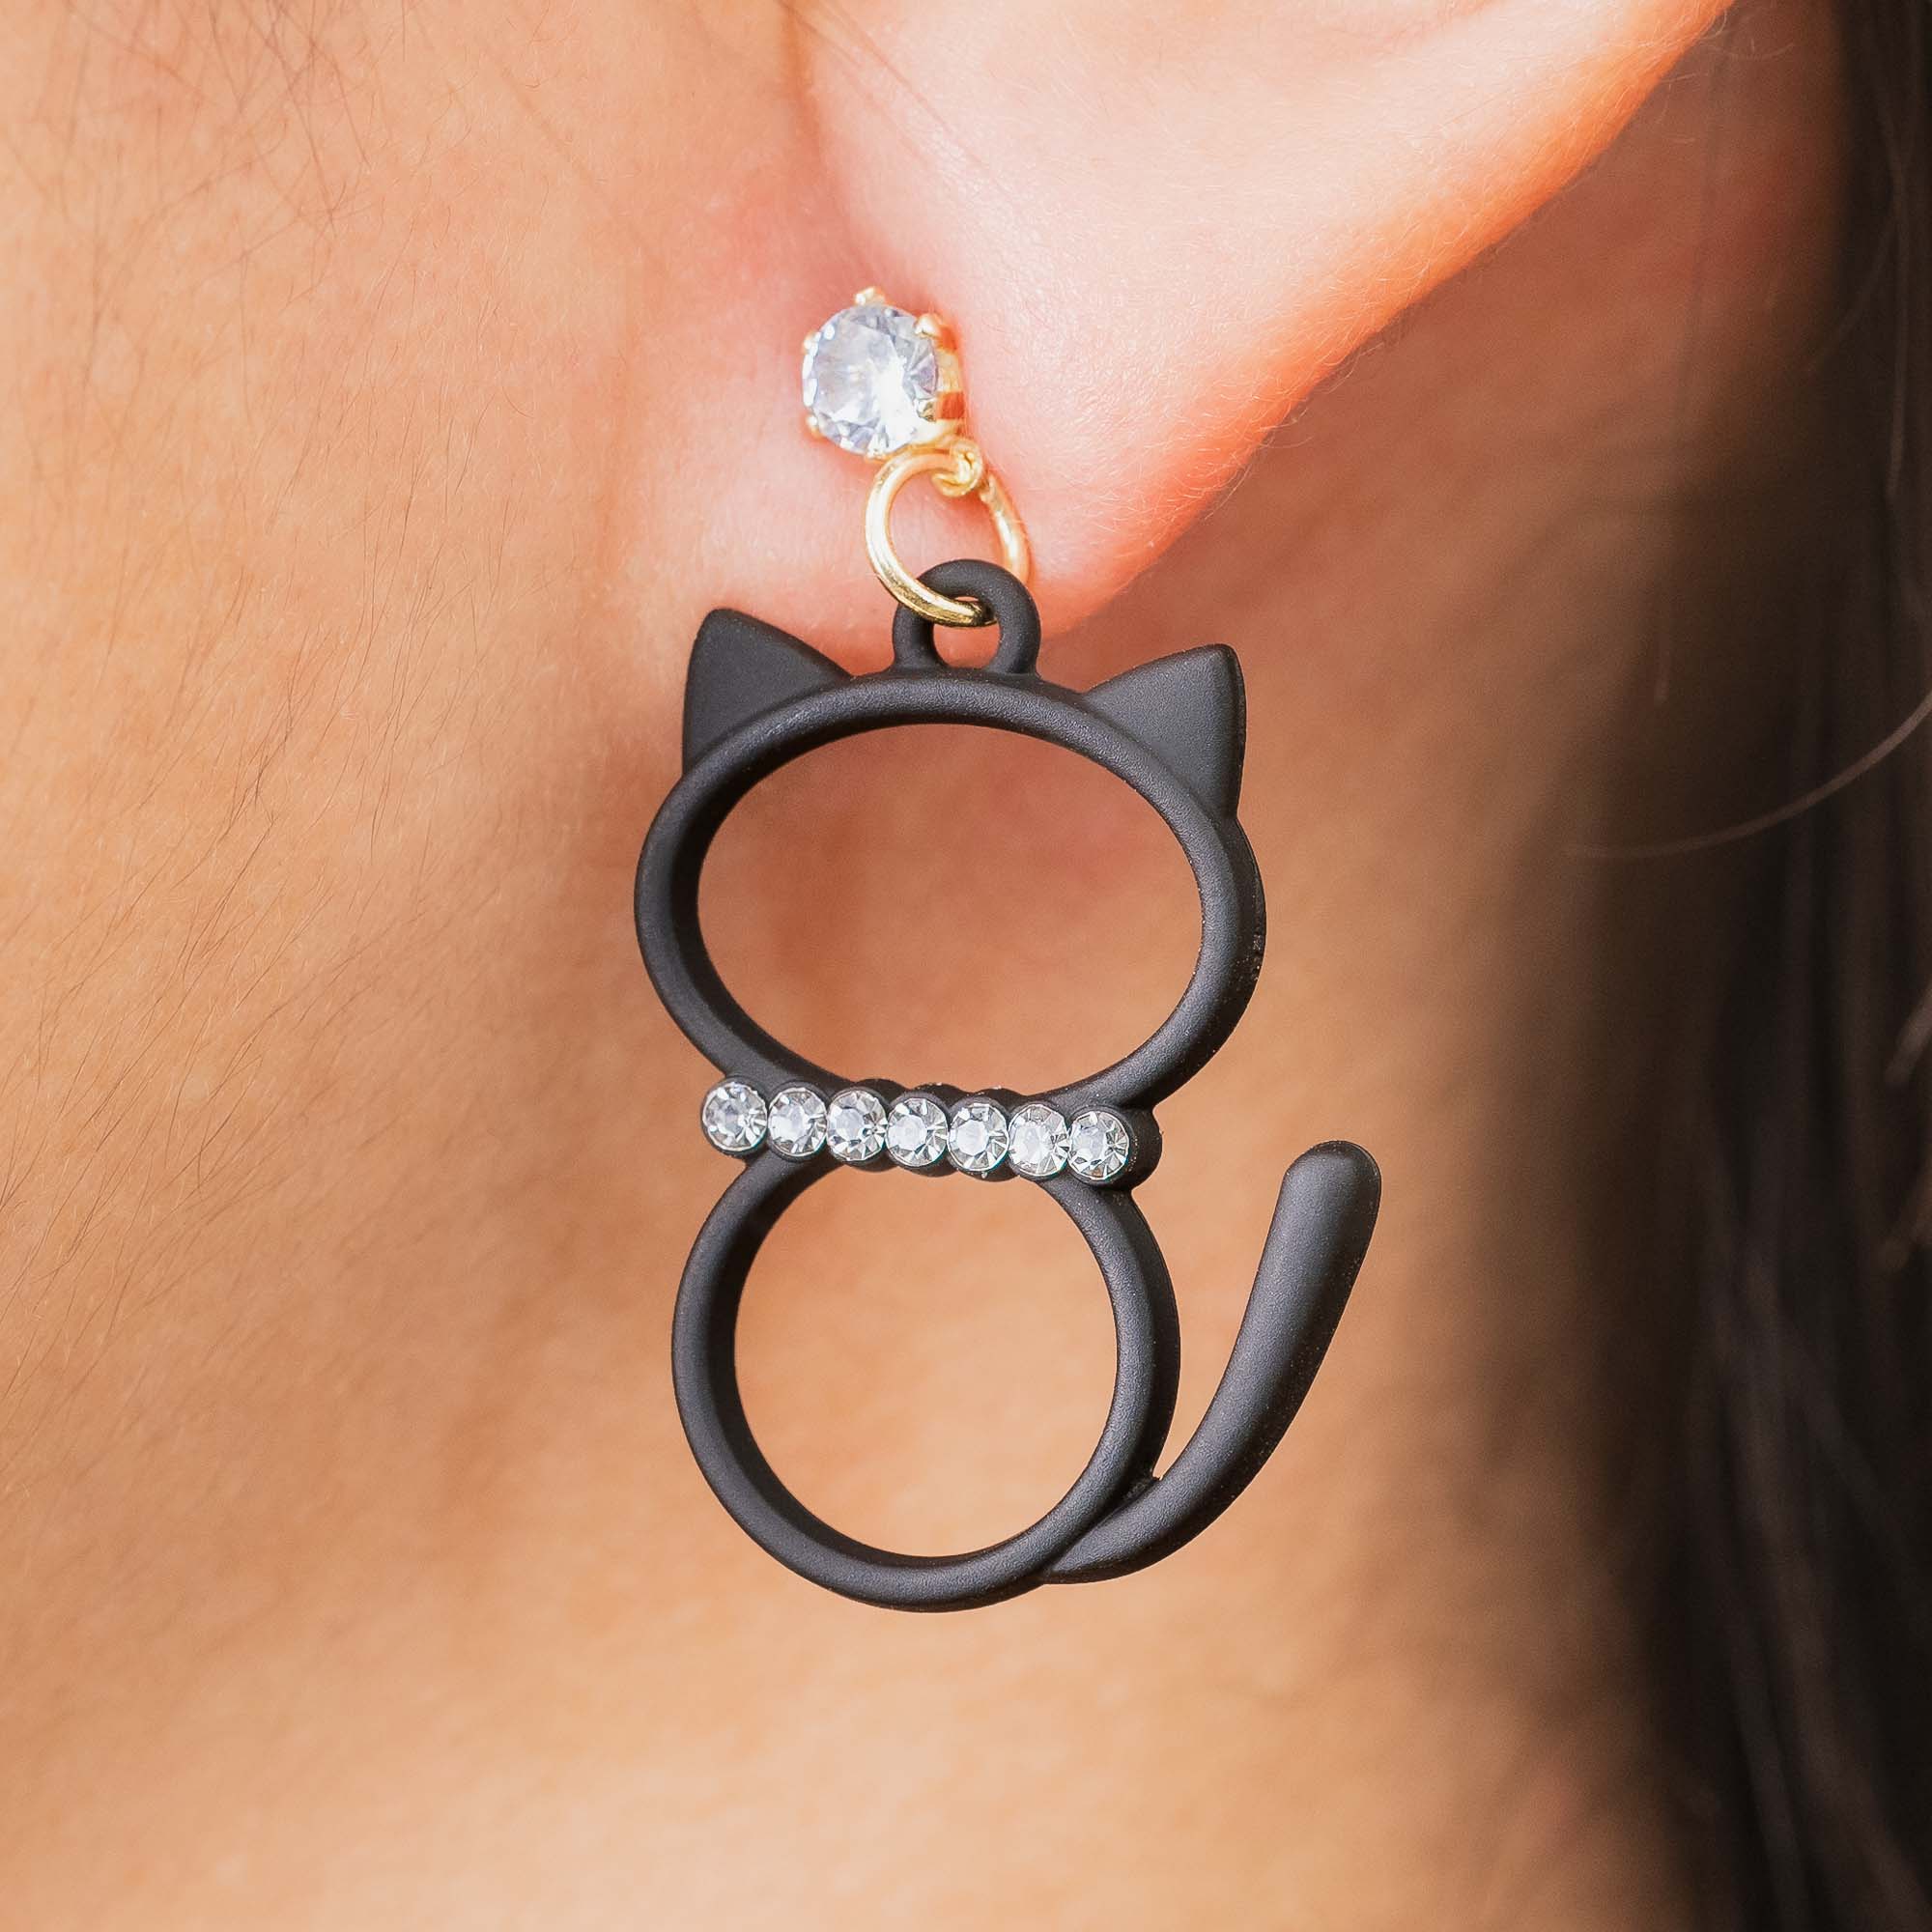 Cat Rhinestone Earrings, Cat Dangle Earrings, Gifts for Cat Mom, Cat Lover Earrings, Black Cat Earrings